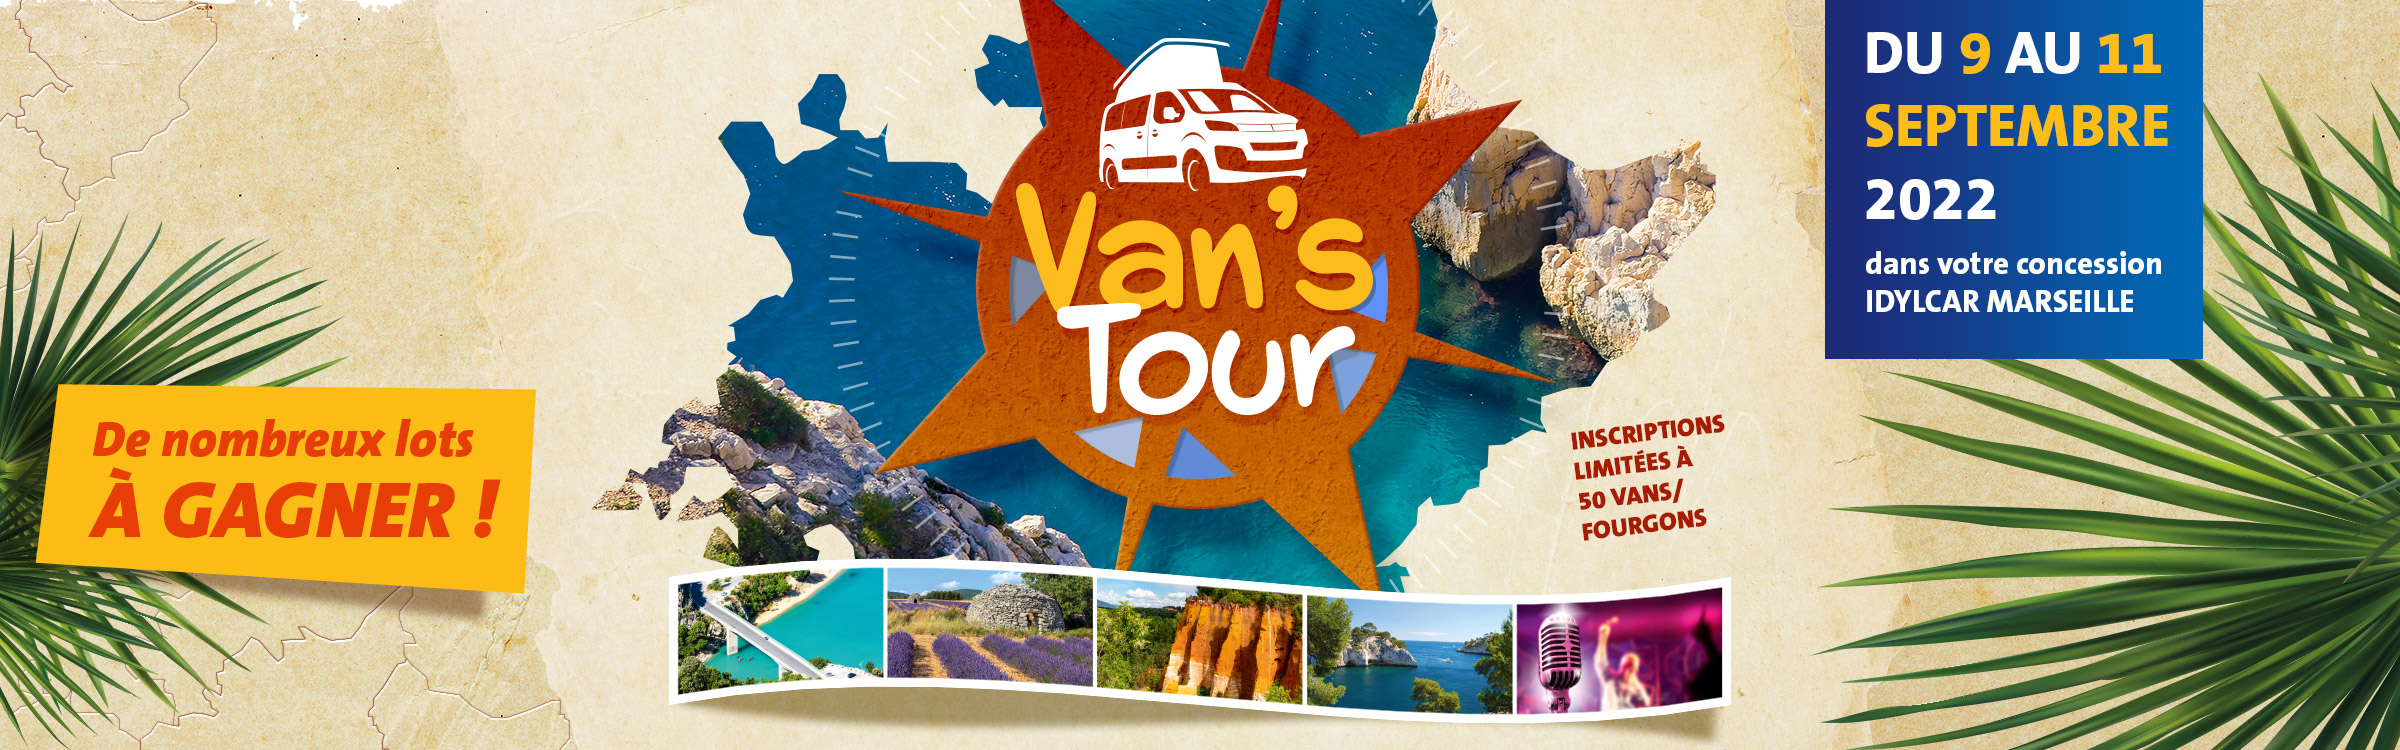 Van's Tour